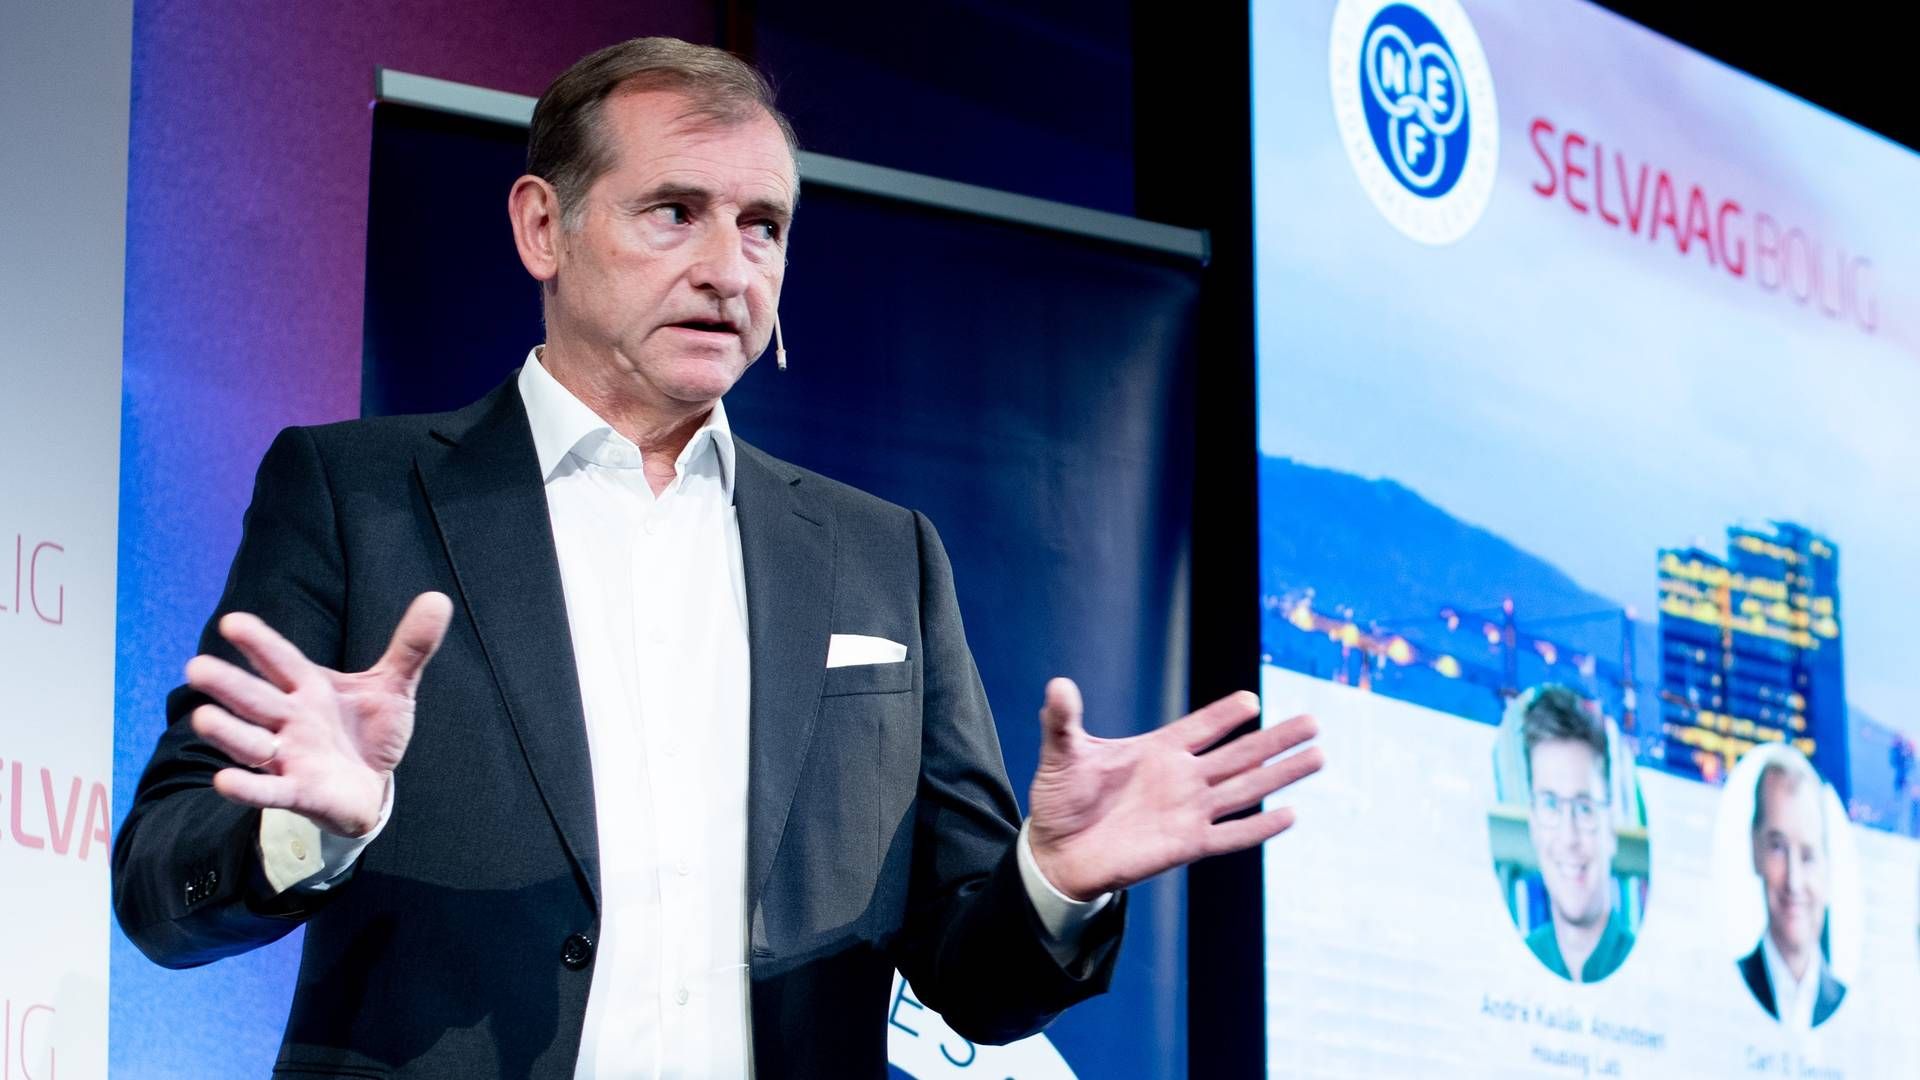 Administrerende direktør Carl O. Geving i Norges Eiendomsmeglerforbund. | Foto: Vidar Sandnes